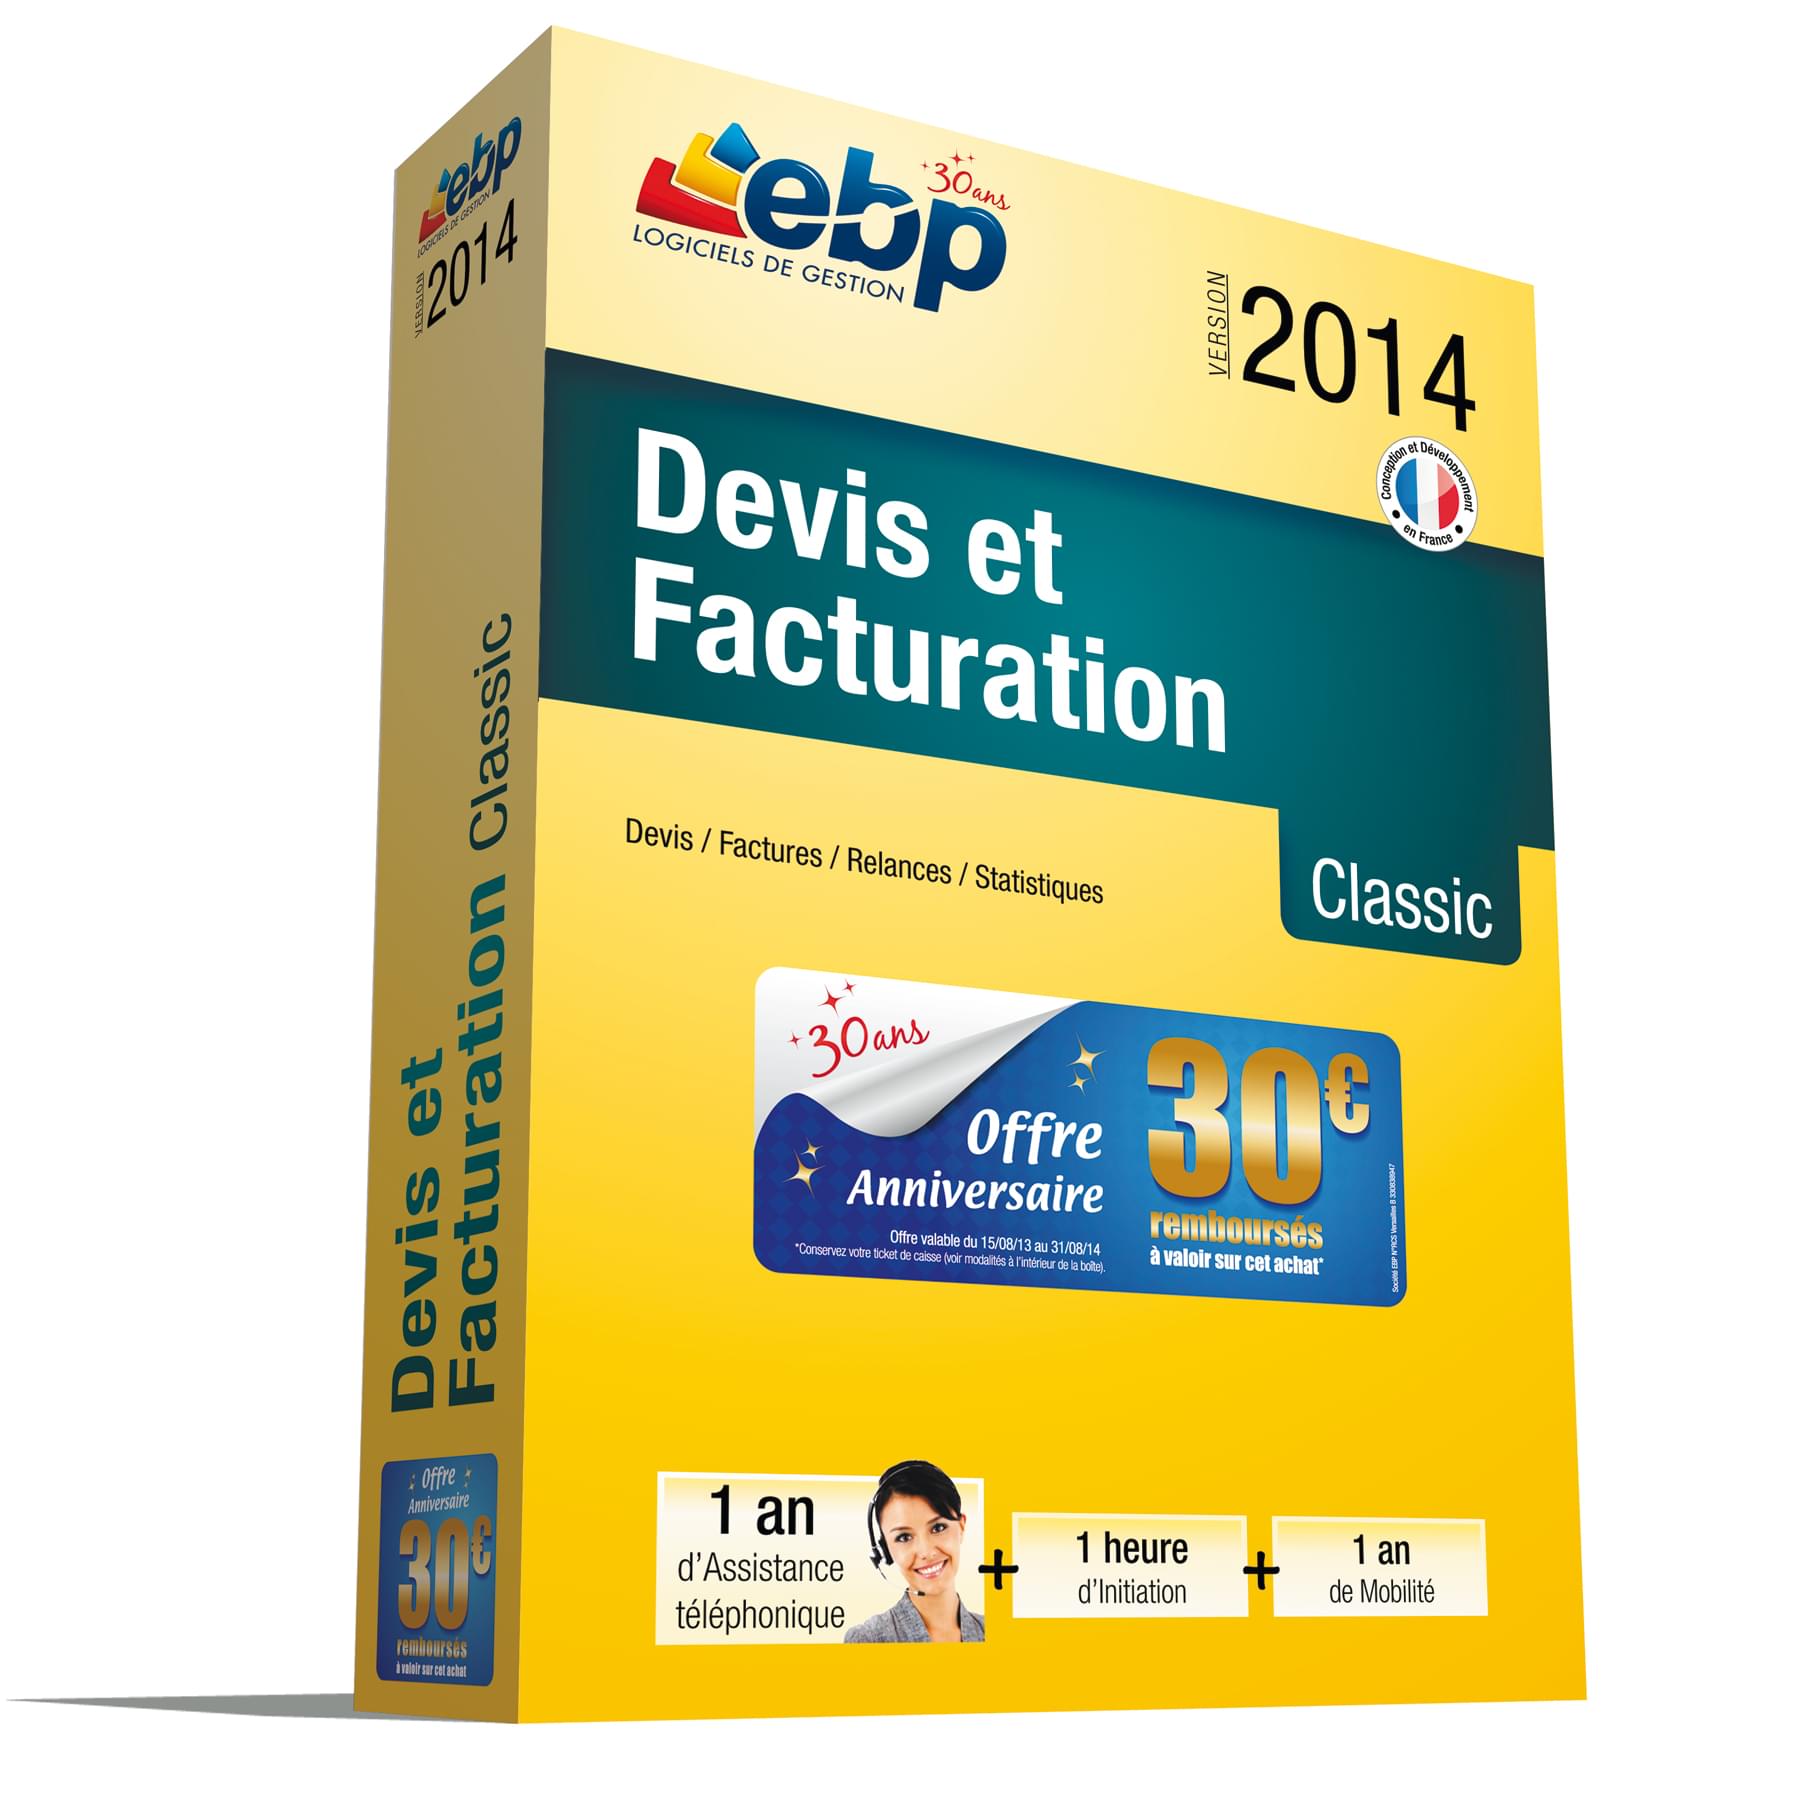 Logiciel application EBP Devis et Facturation Classic 2014 + Services VIP